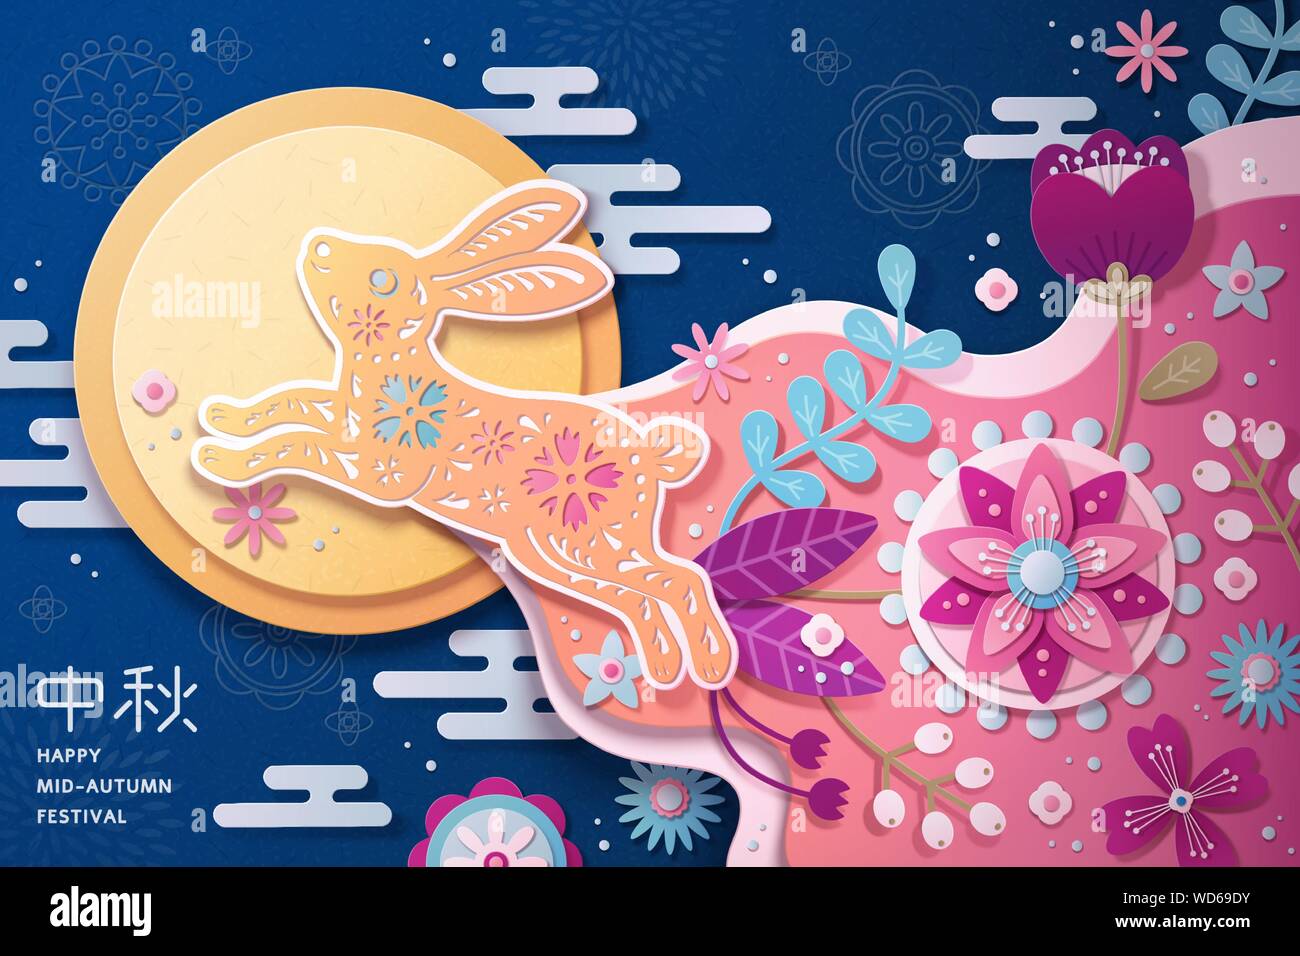 Heureux Festival de mi-automne paper art design avec hopping lapin et de belles fleurs sur fond bleu, nom de mots écrits en chinois Illustration de Vecteur